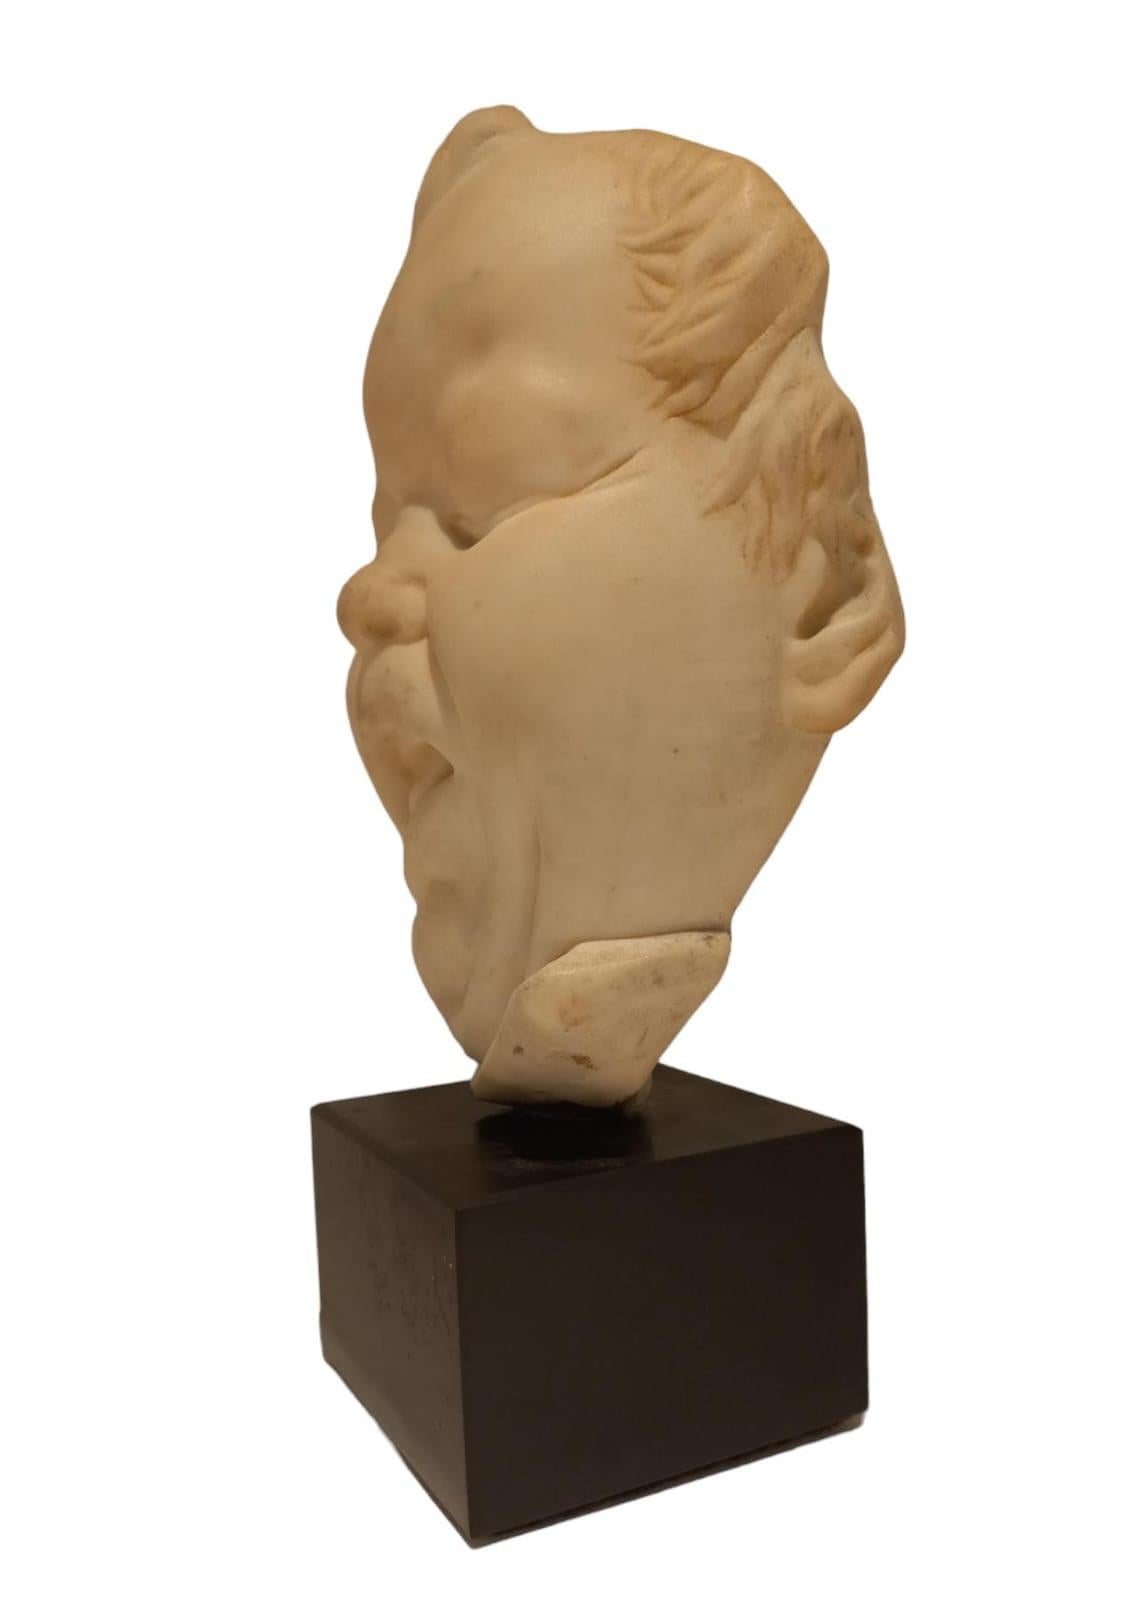 Weiße Marmorskulptur, die das Gesicht eines Kindes mit einer Grimasse darstellt, 19. Jahrhundert, Höhe der Skulptur allein 23 cm, Breite 17 cm, der Sockel in Schwarz aus Belgien ist 7 cm hoch und hat eine Größe von 10x10 cm.
Die Skulptur ist